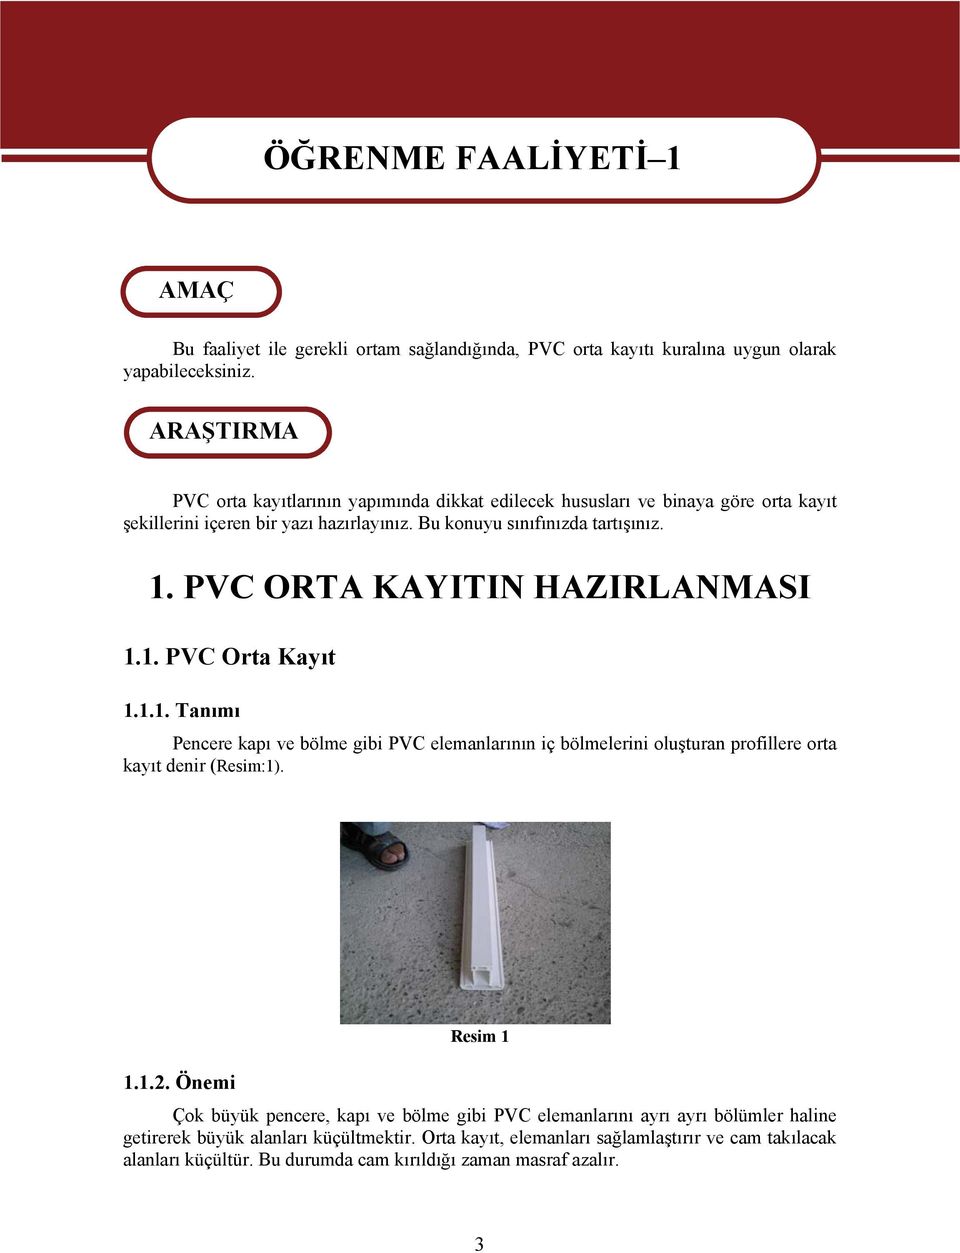 PVC ORTA KAYITIN HAZIRLANMASI 1.1. PVC Orta Kayıt 1.1.1. Tanımı Pencere kapı ve bölme gibi PVC elemanlarının iç bölmelerini oluşturan profillere orta kayıt denir (Resim:1). 1.1.2.